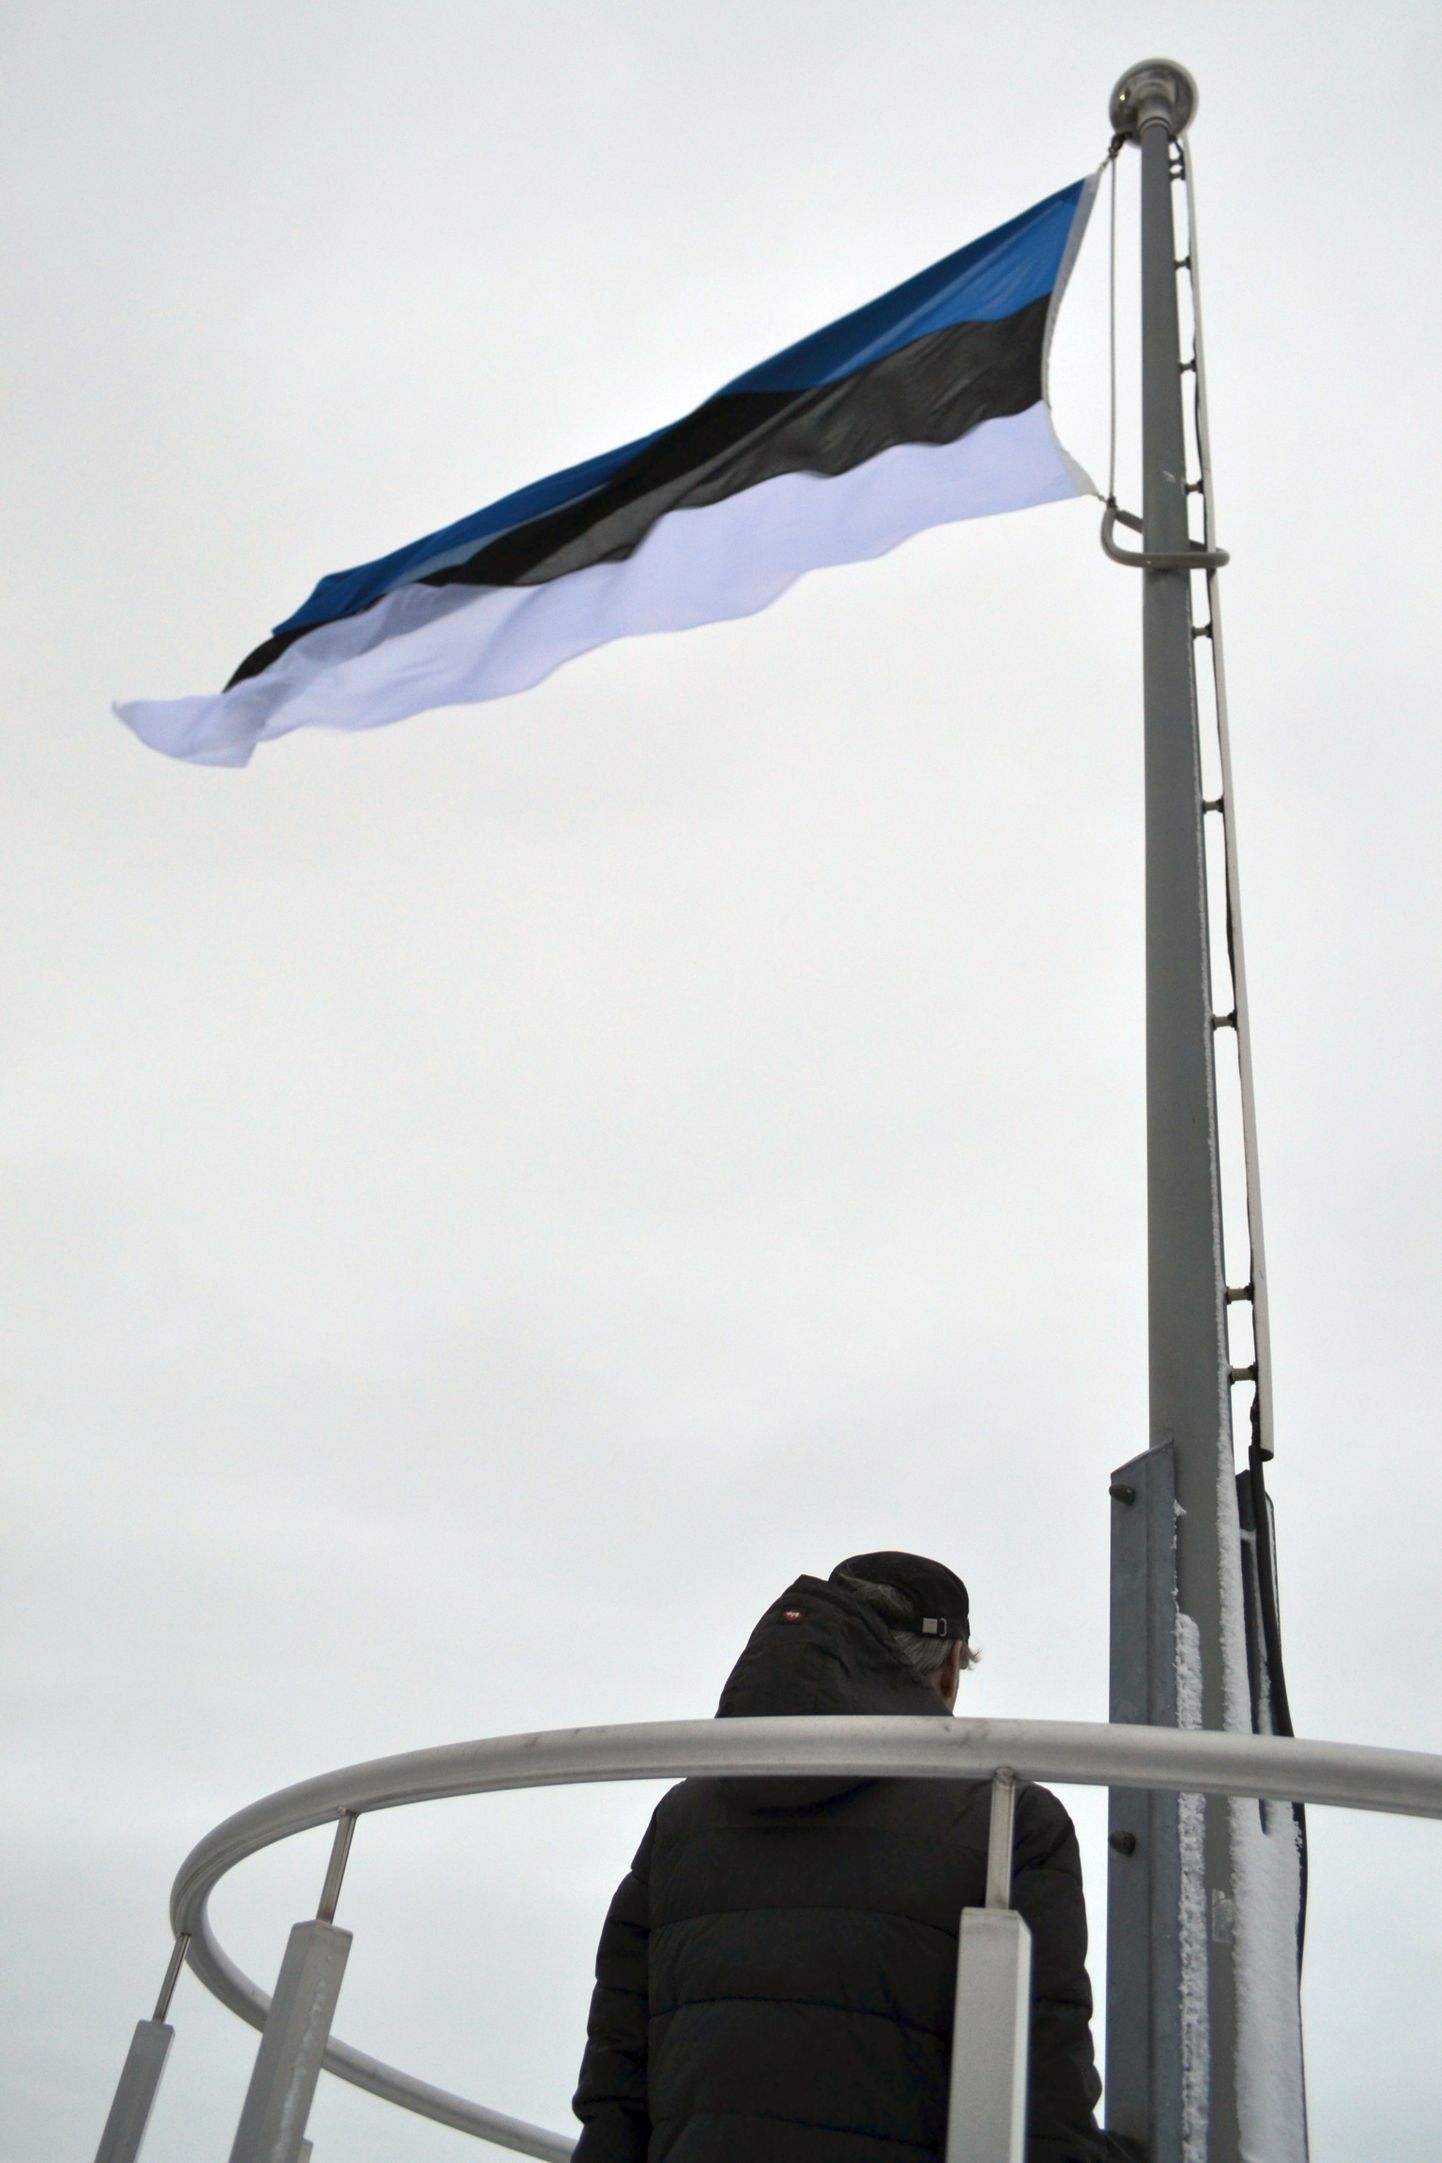 Sinimustvalge lipu heiskamine Toompeal 24. veebruaril 2016.